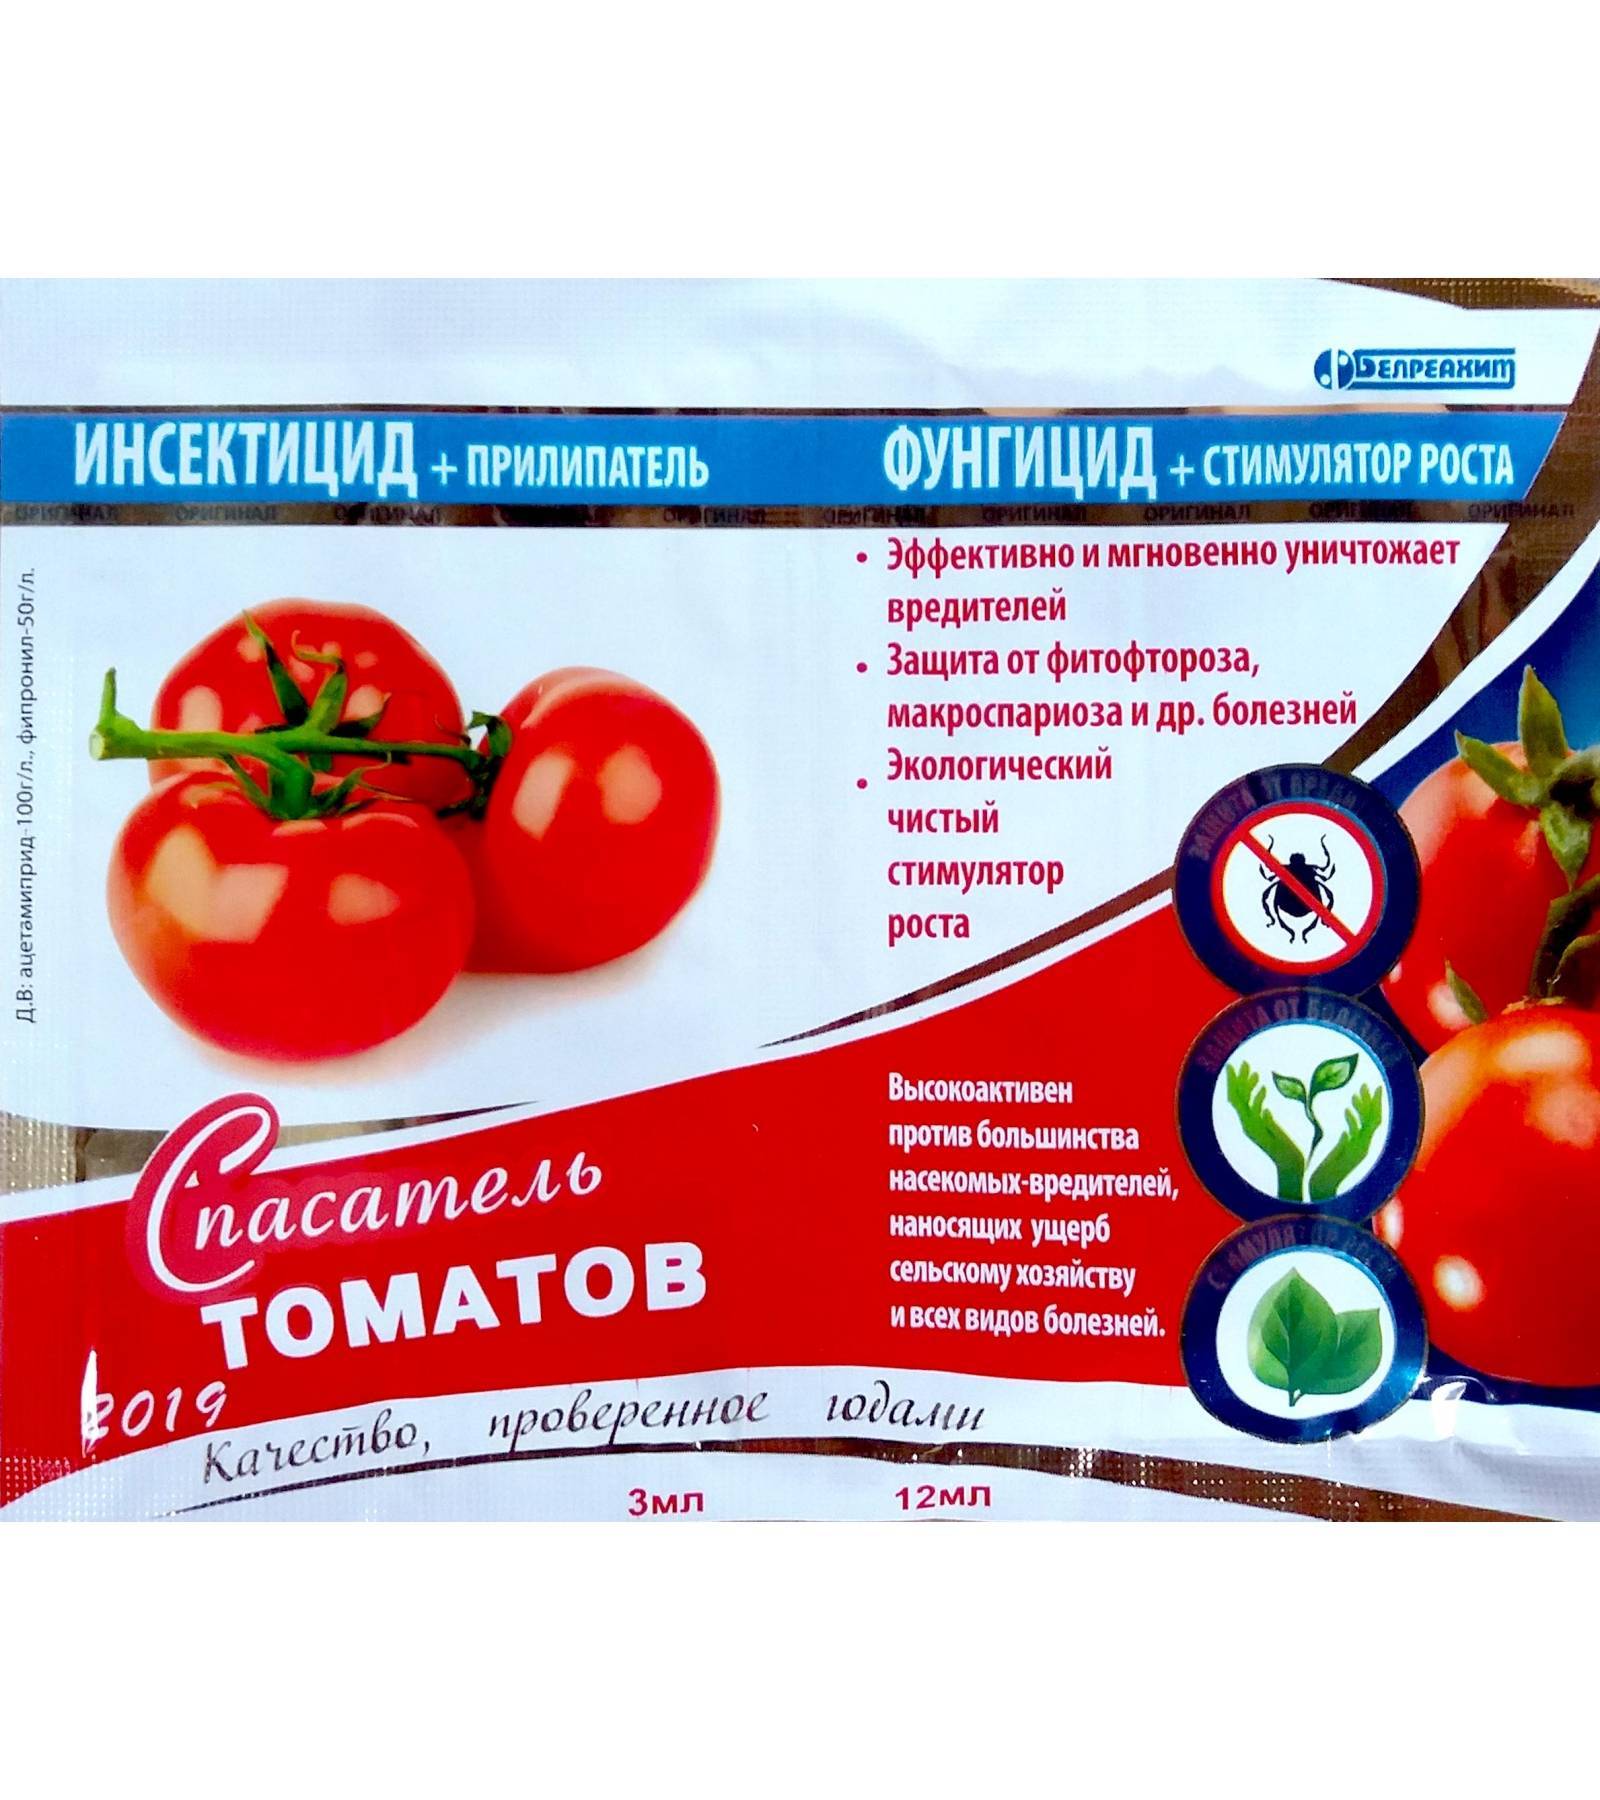 Тилт 250 для томатов и винограда: характеристики и применение в садоводстве